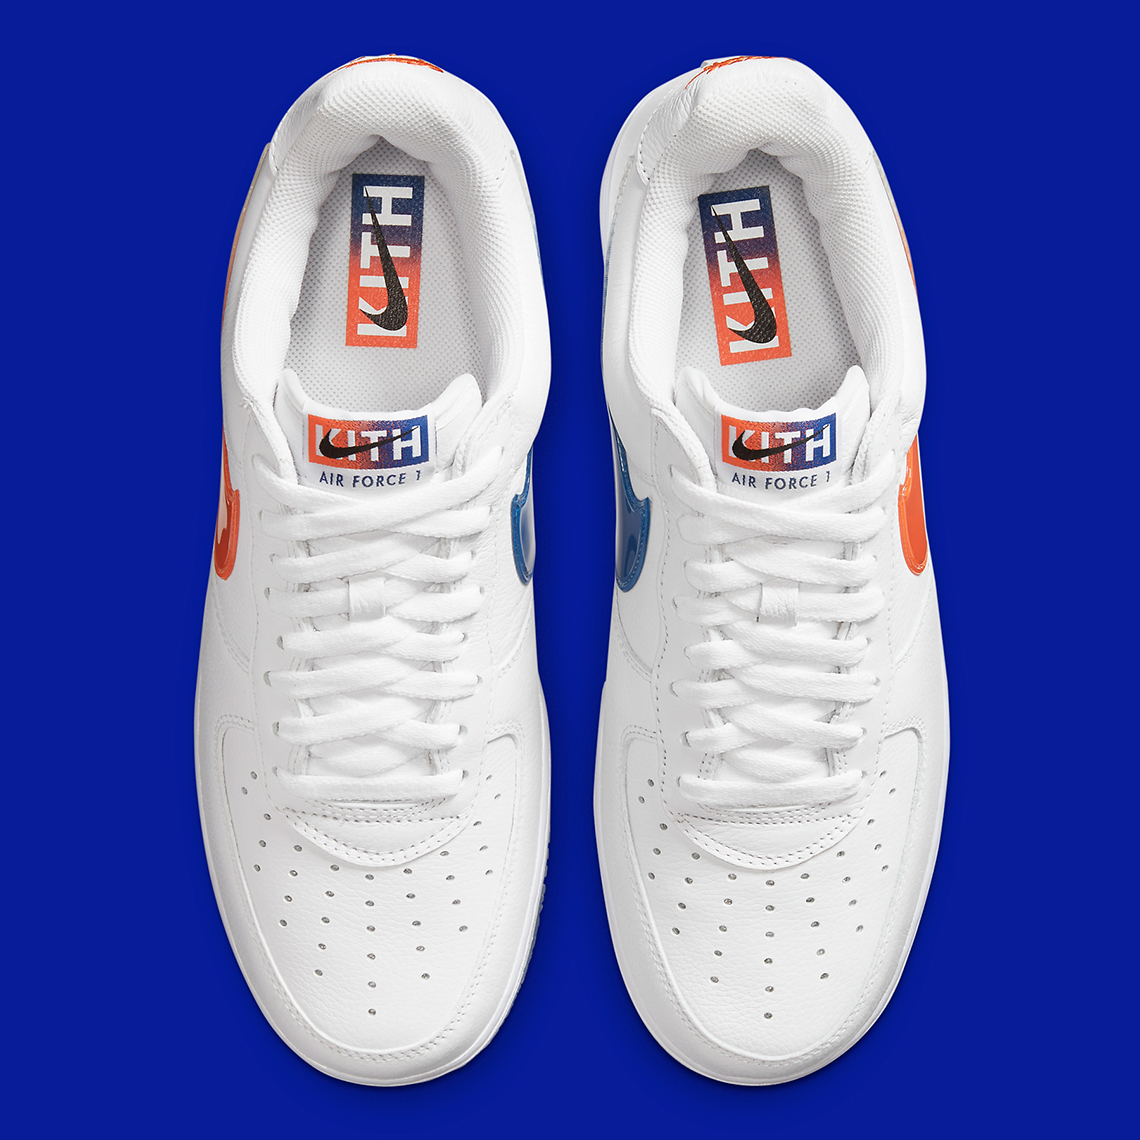 Nike Air Force 1 Low Retro - Safety Orange / Summit White – Kith Europe